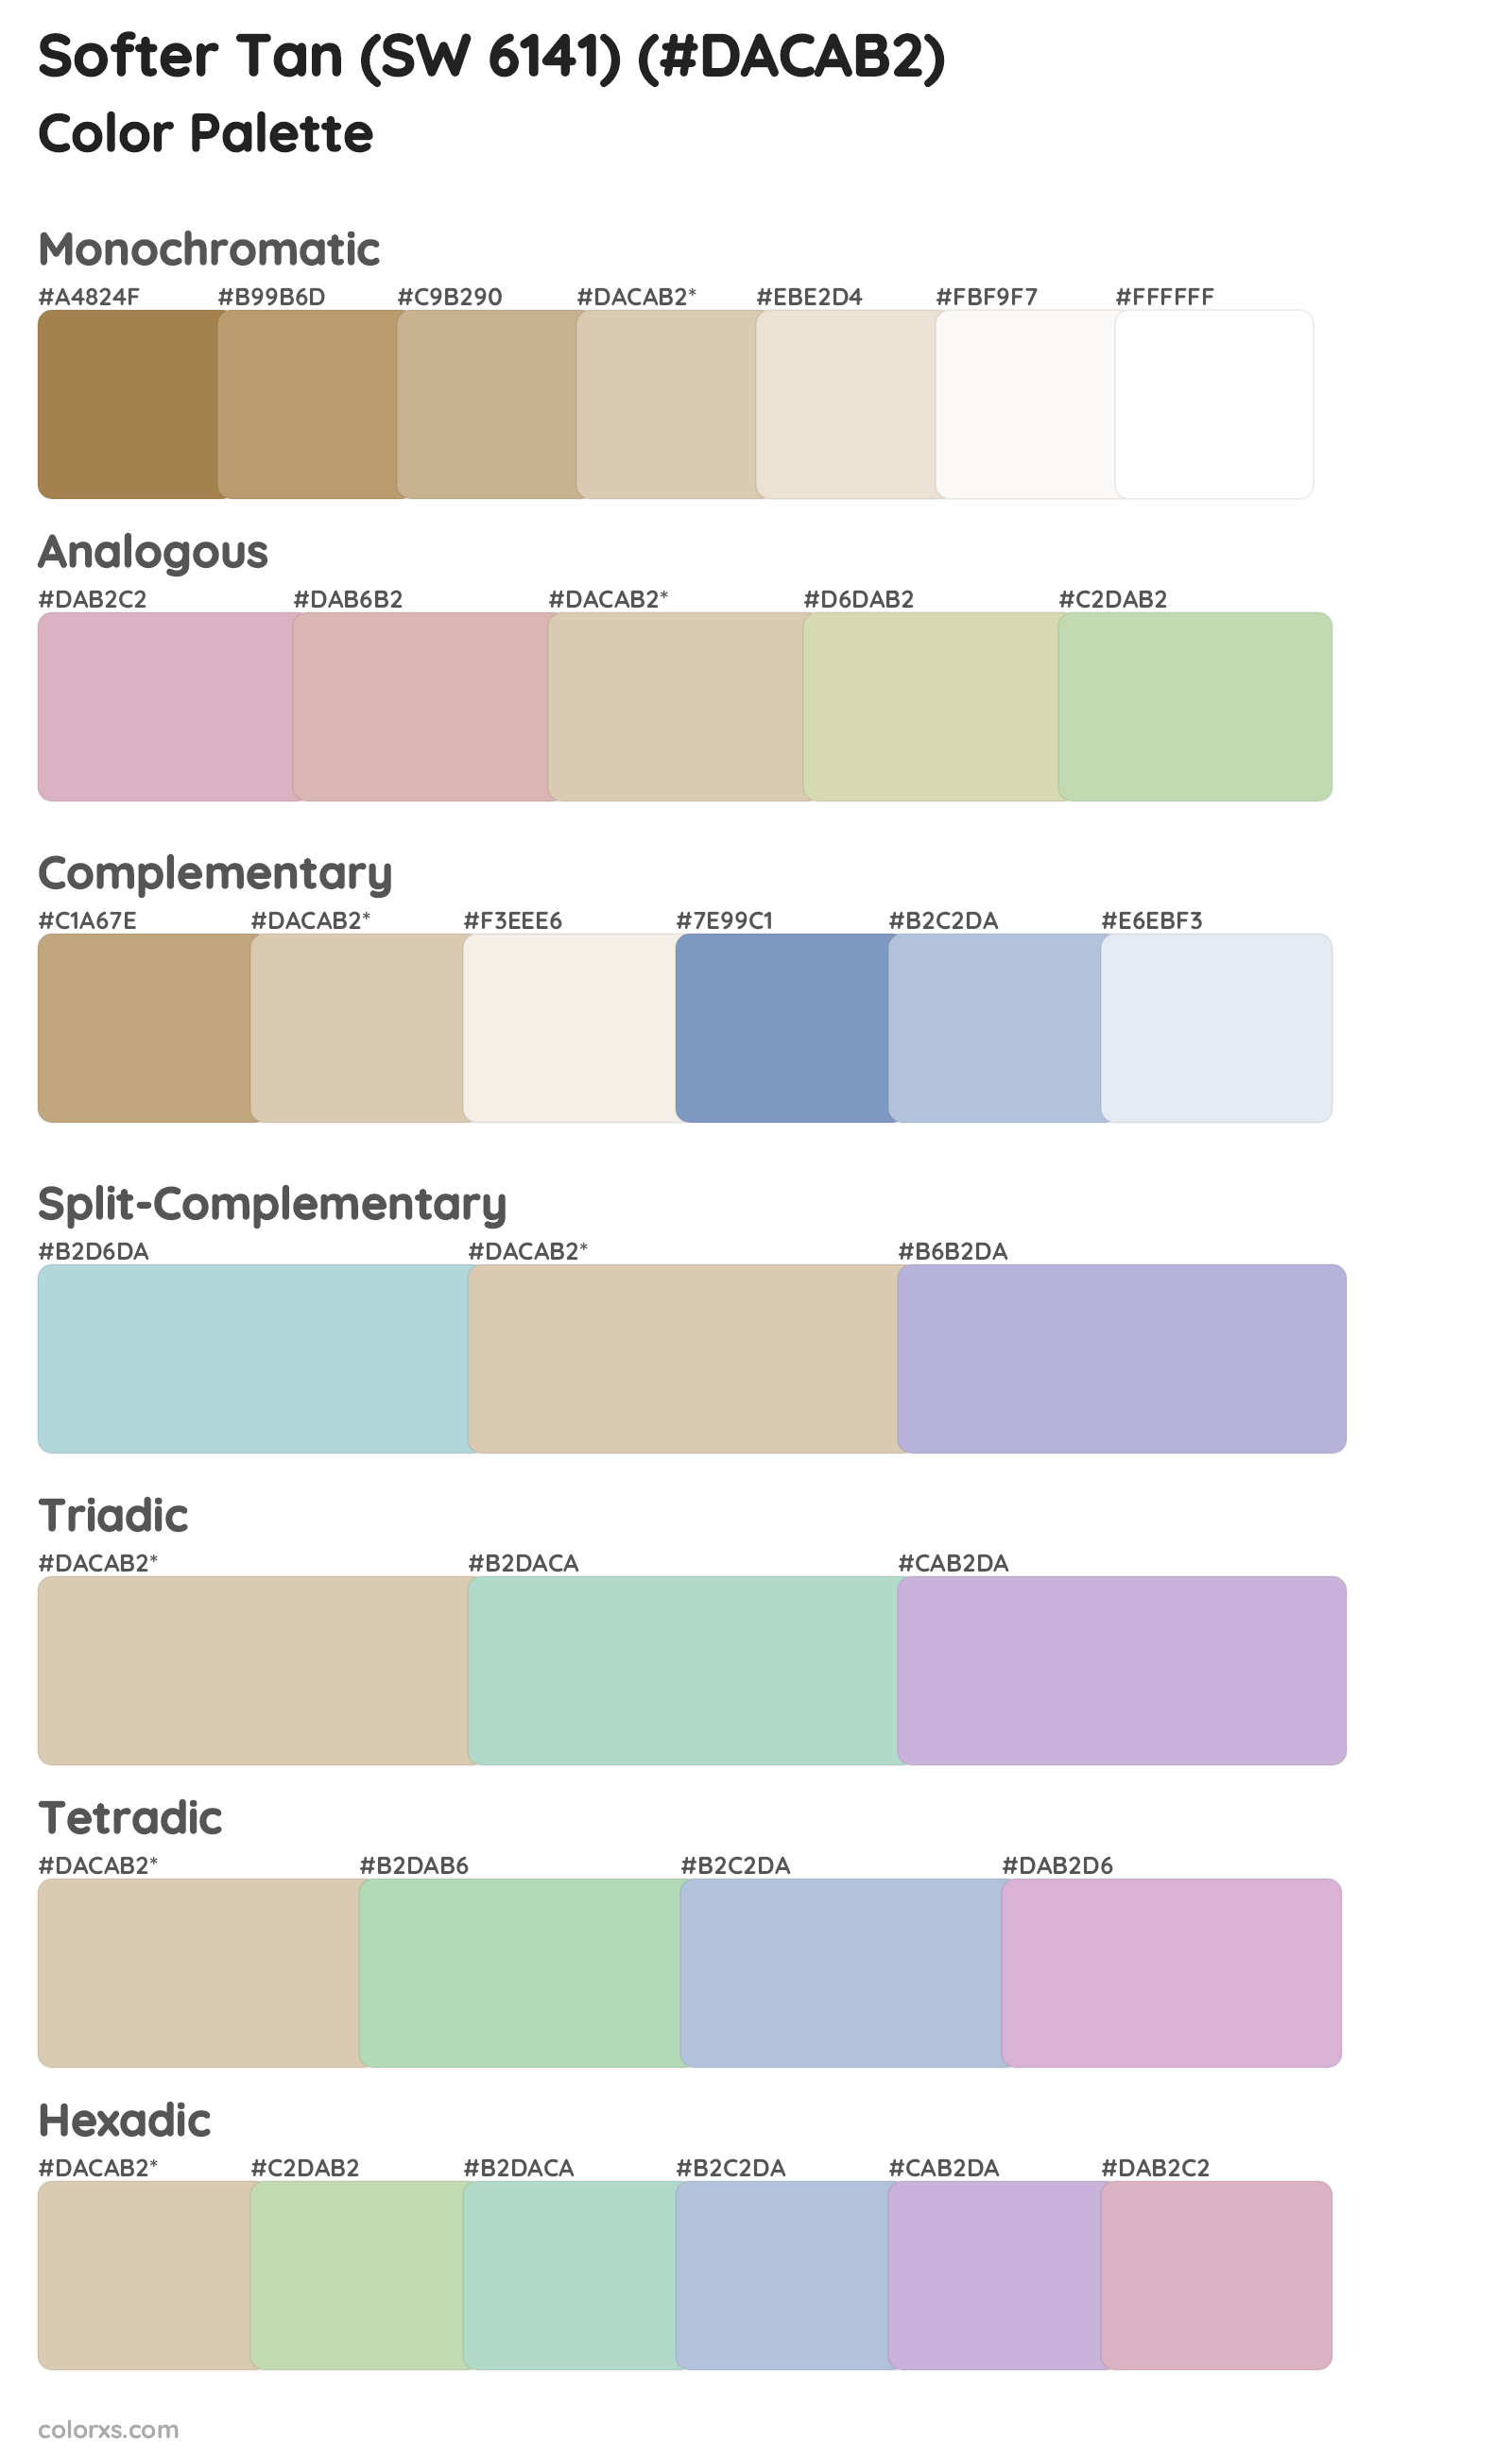 Softer Tan (SW 6141) Color Scheme Palettes